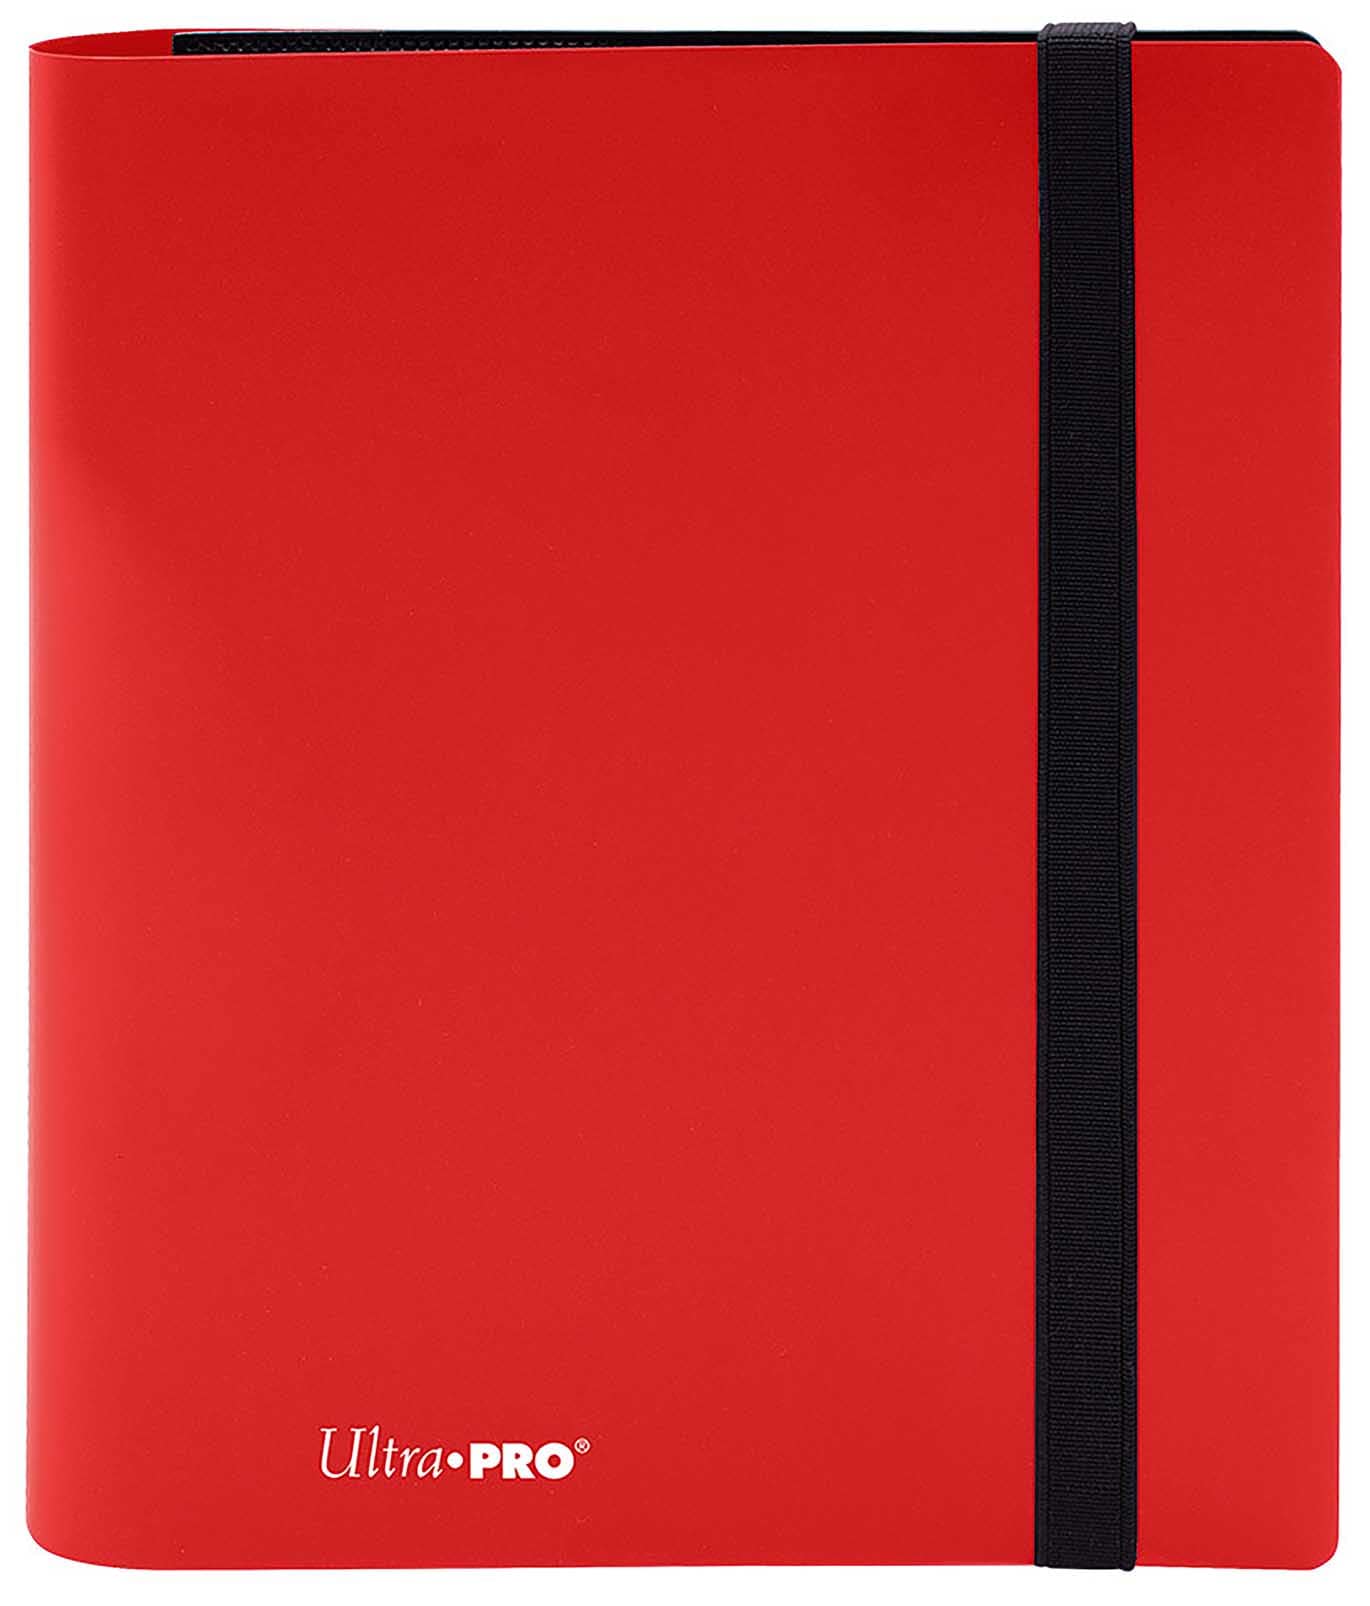 Eclipse 4-Pocket - Red - Ultra PRO Ordner